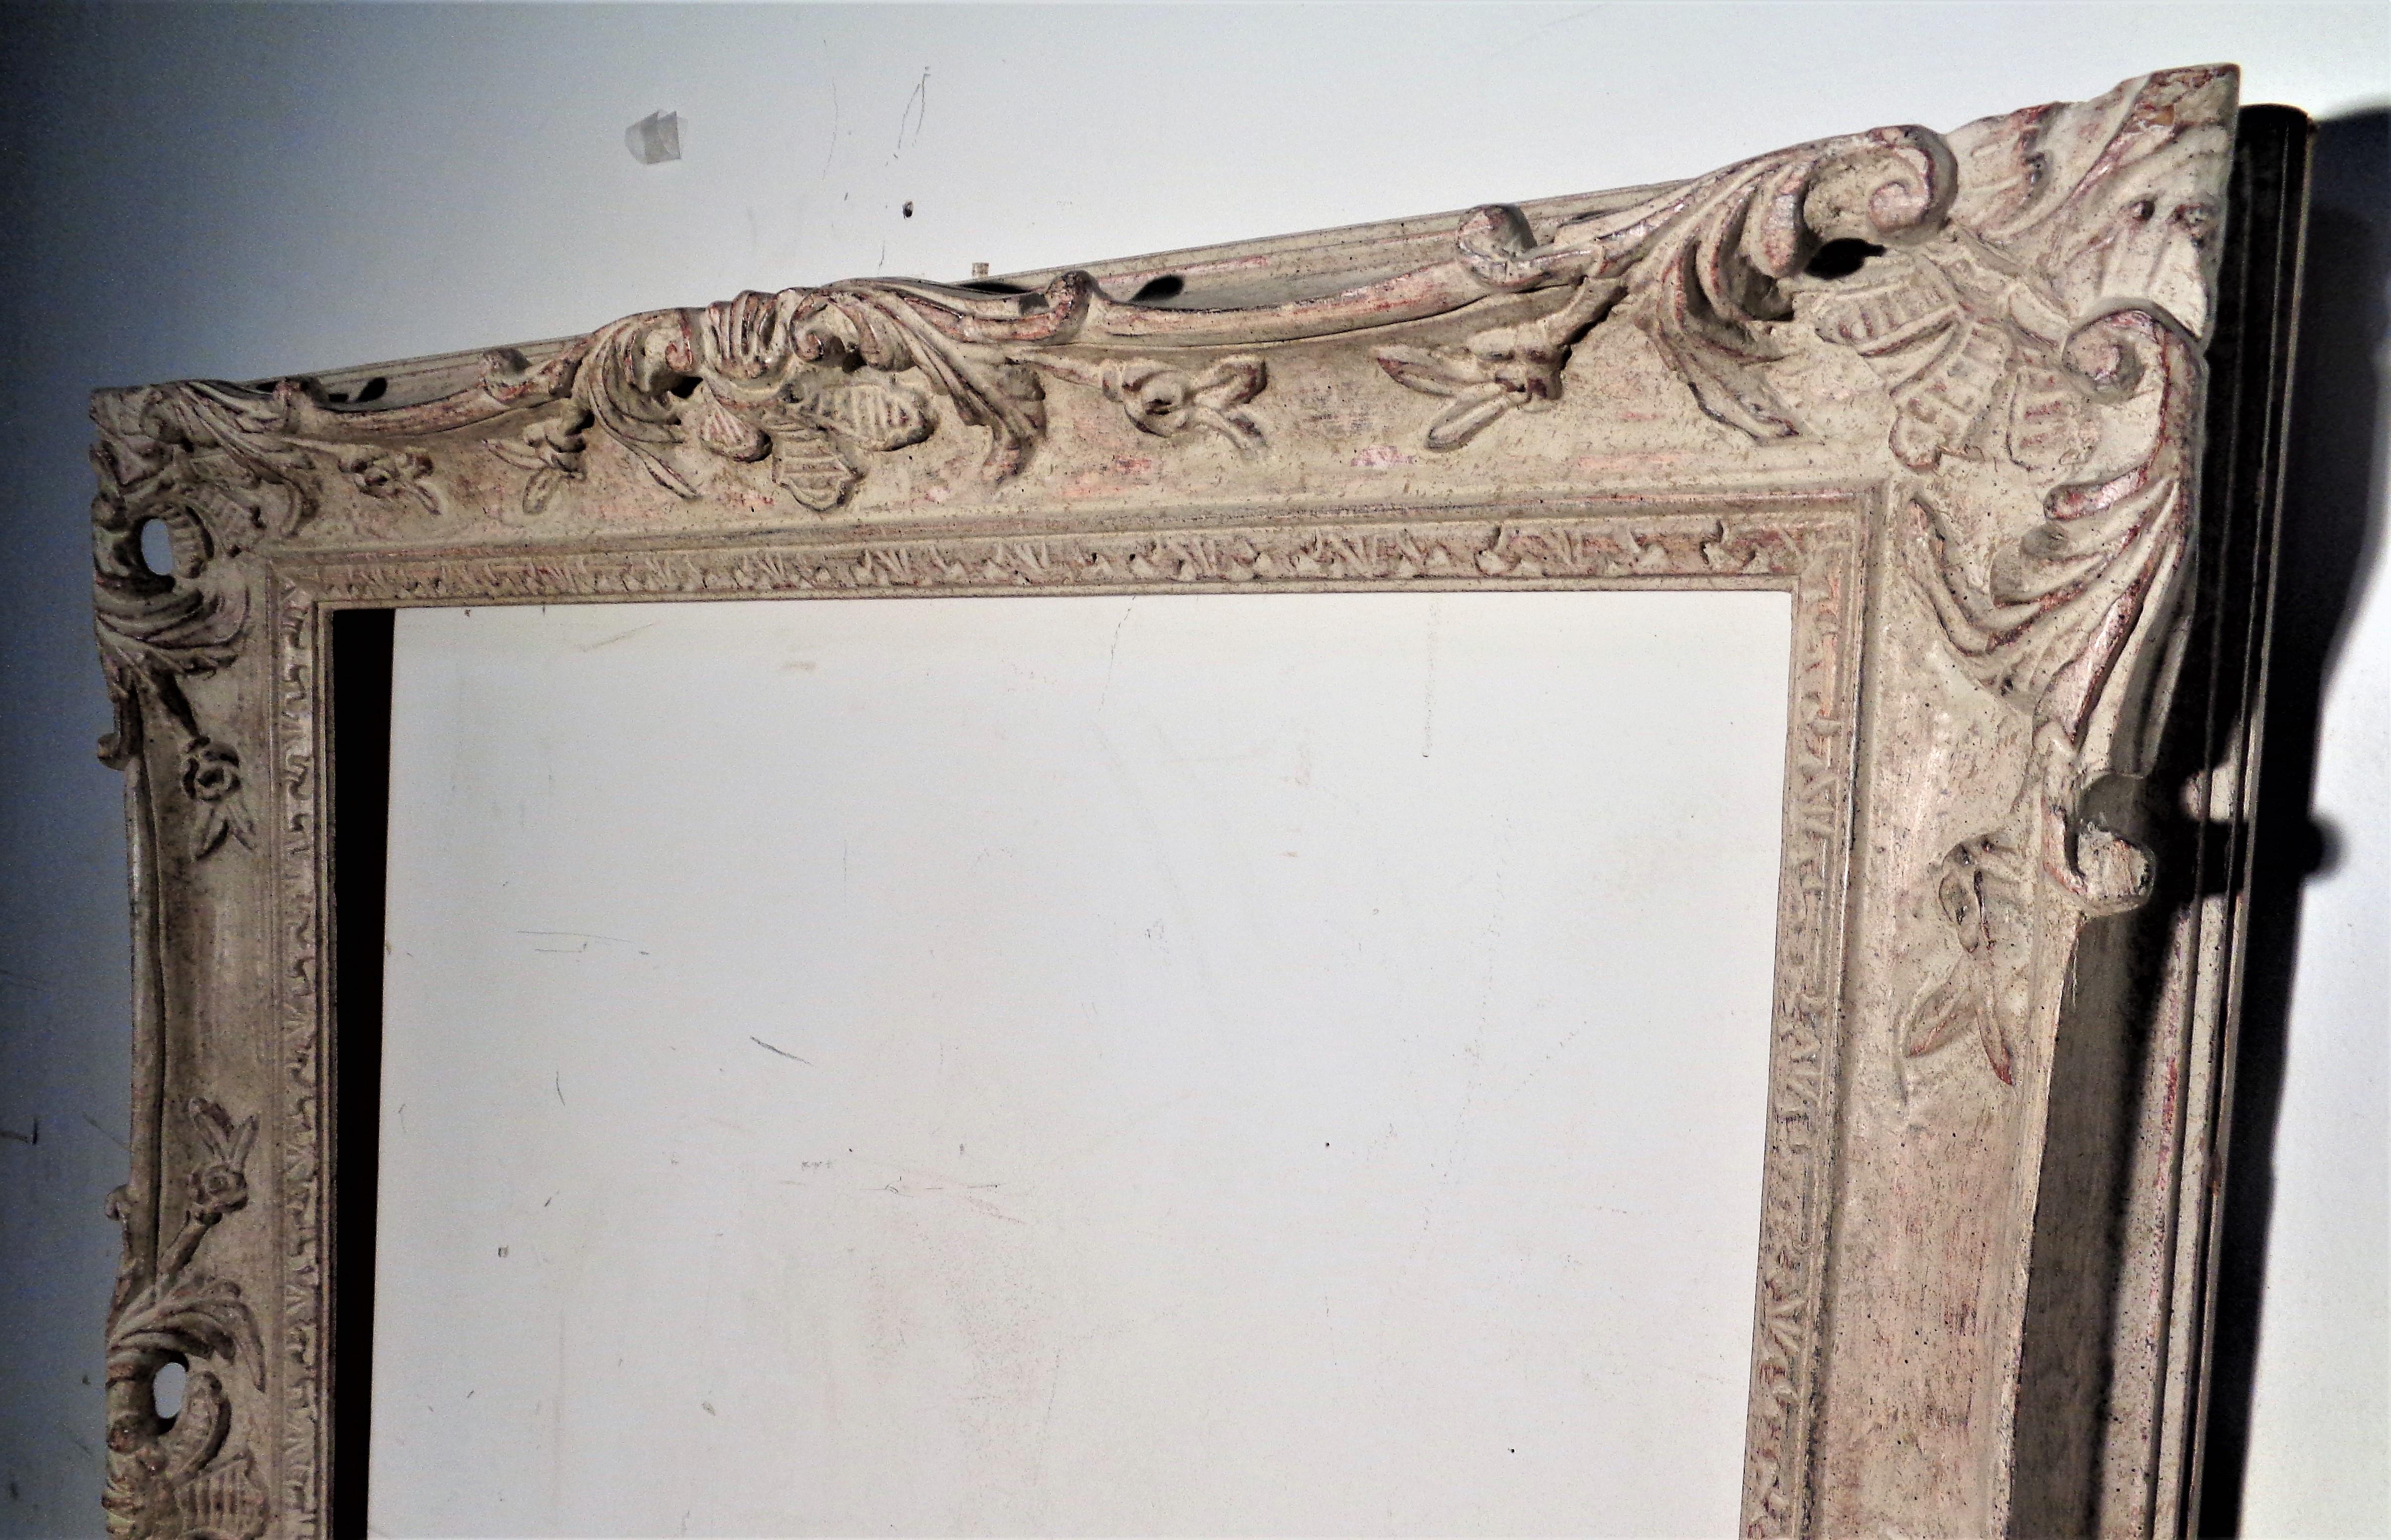 Grand cadre en bois sculpté de style Louis XV en surface blanchie d'origine magnifiquement vieillie. Vers les années 1960. Cadre décoratif idéal pour un miroir ou un tableau. Regardez toutes les photos et lisez le rapport de condition dans la